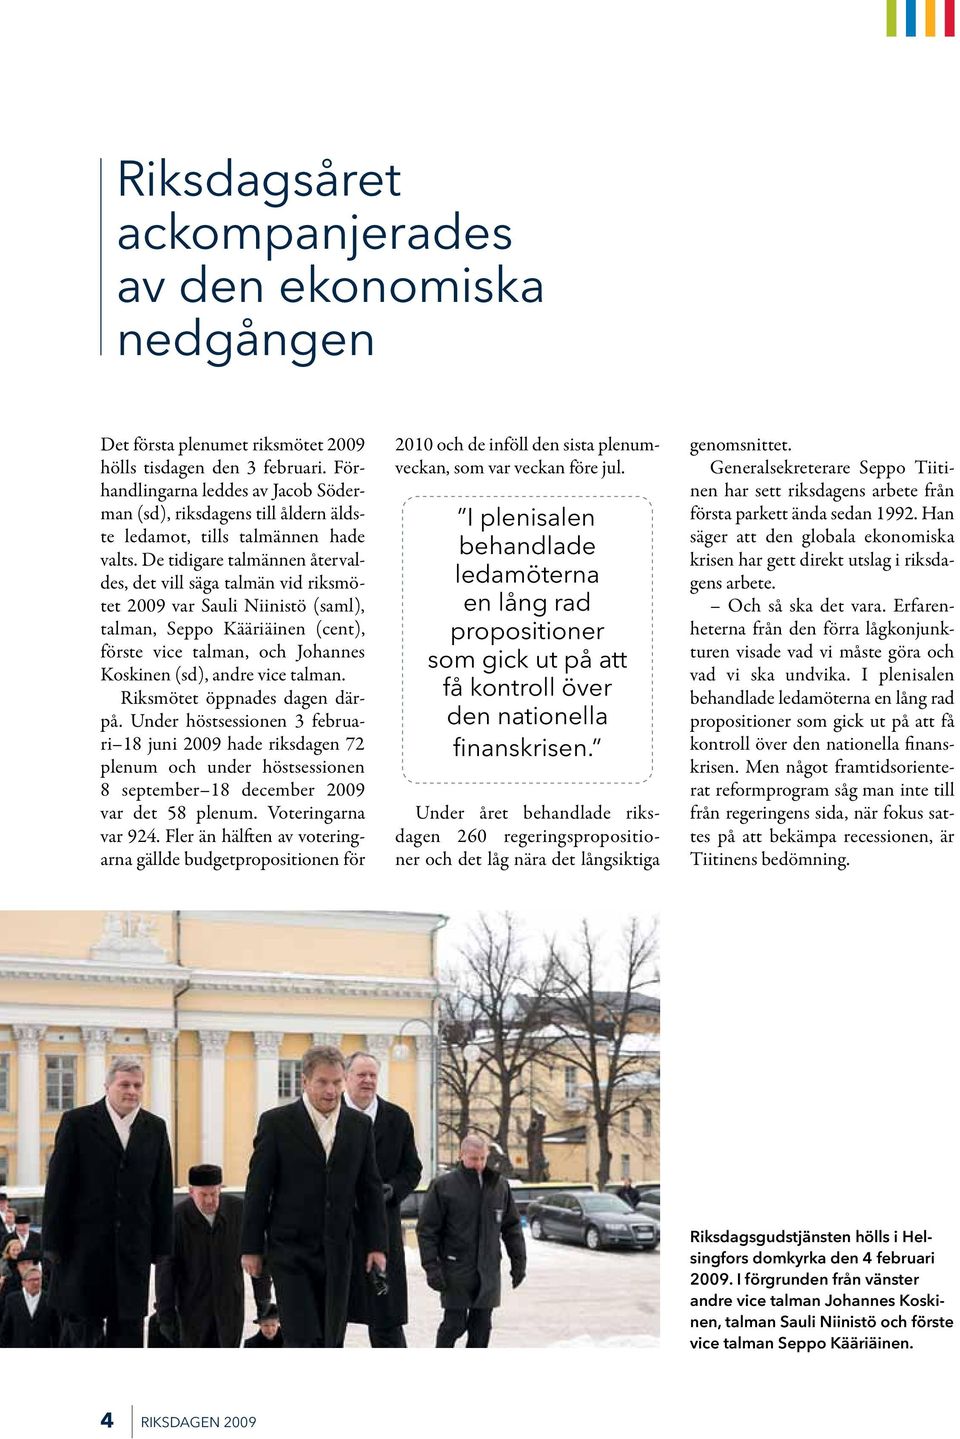 De tidigare talmännen återvaldes, det vill säga talmän vid riksmötet 2009 var Sauli Niinistö (saml), talman, Seppo Kääriäinen (cent), förste vice talman, och Johannes Koskinen (sd), andre vice talman.